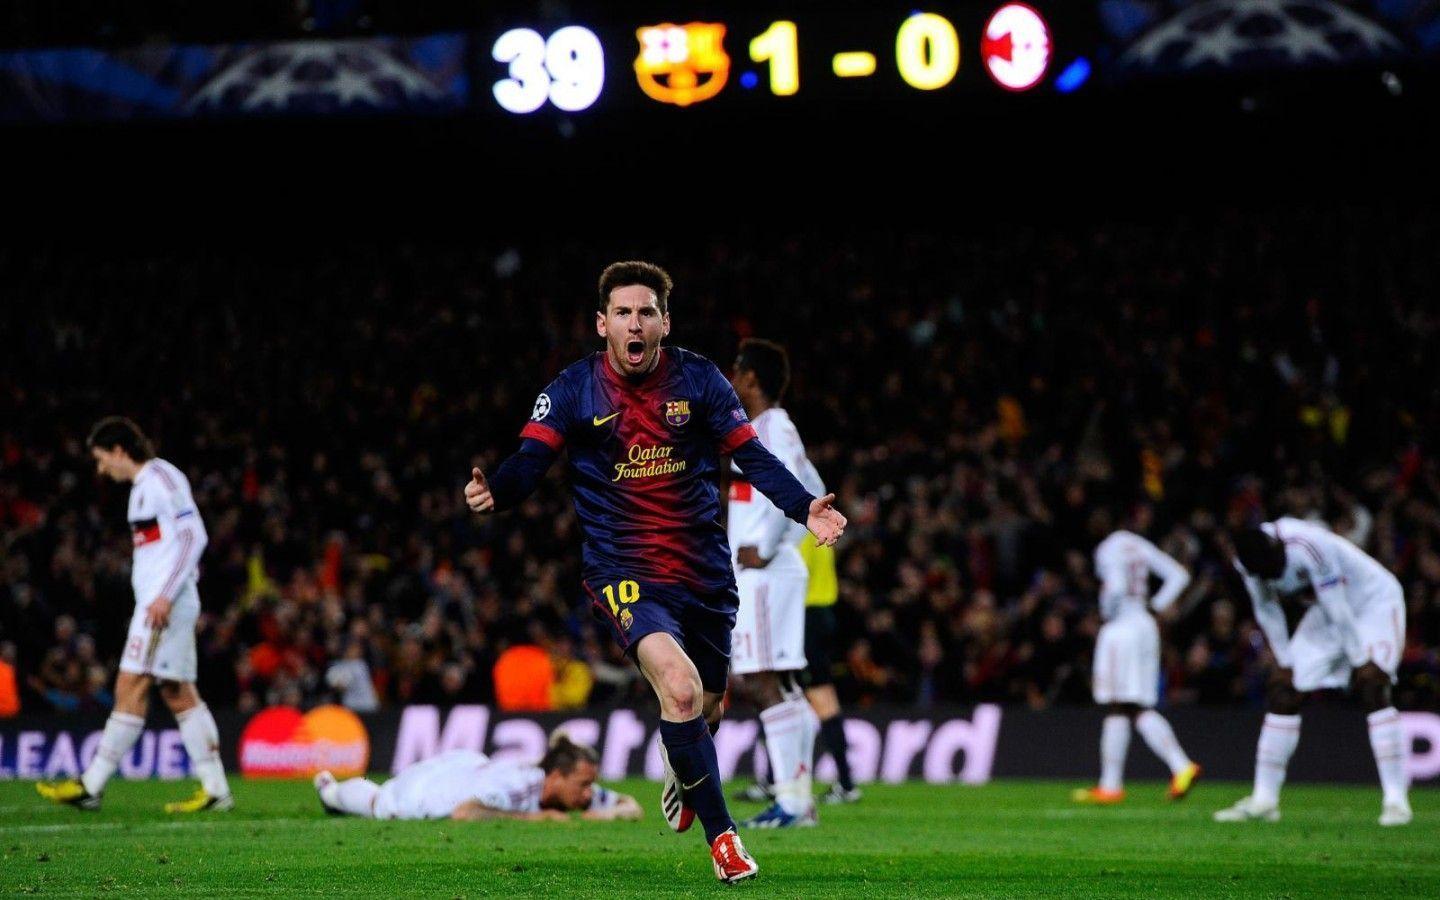 Lionel Messi Wallpaper 2015 Background 1 HD Wallpaper. amagico